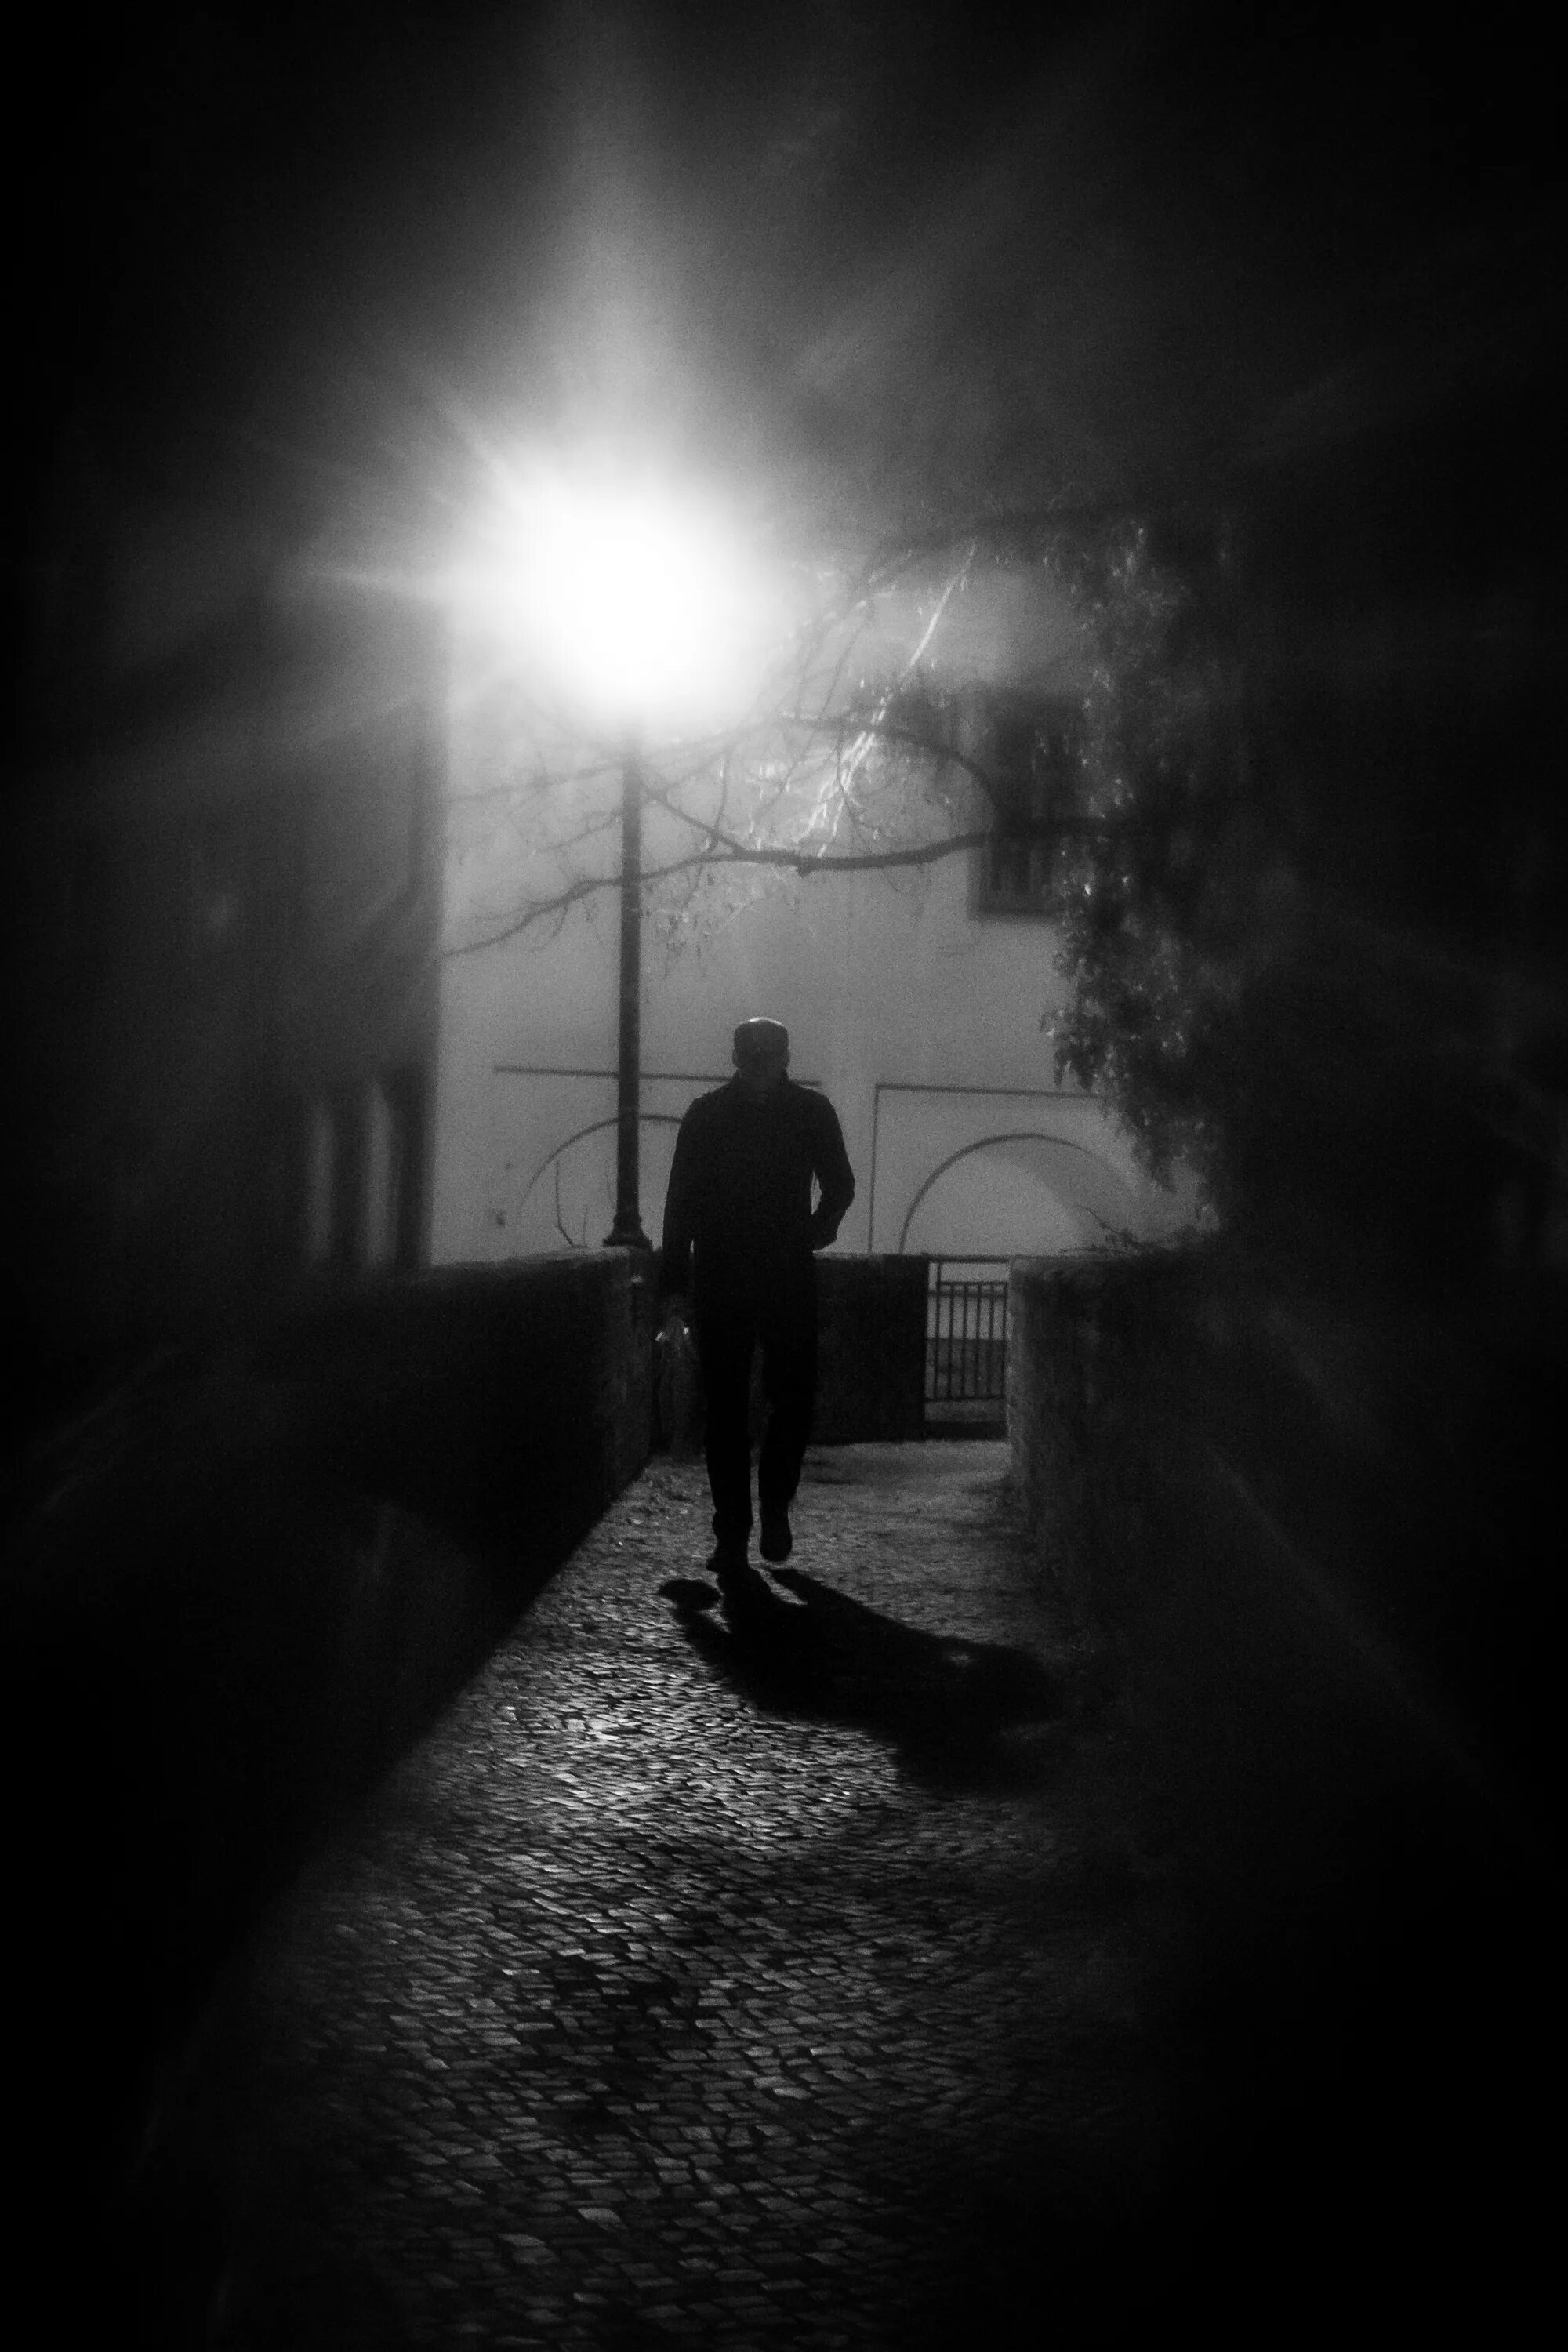 Наугад в темноту. Парень в темноте. Человек на темной улице. Тени ушедших. Одиночество в ночи.